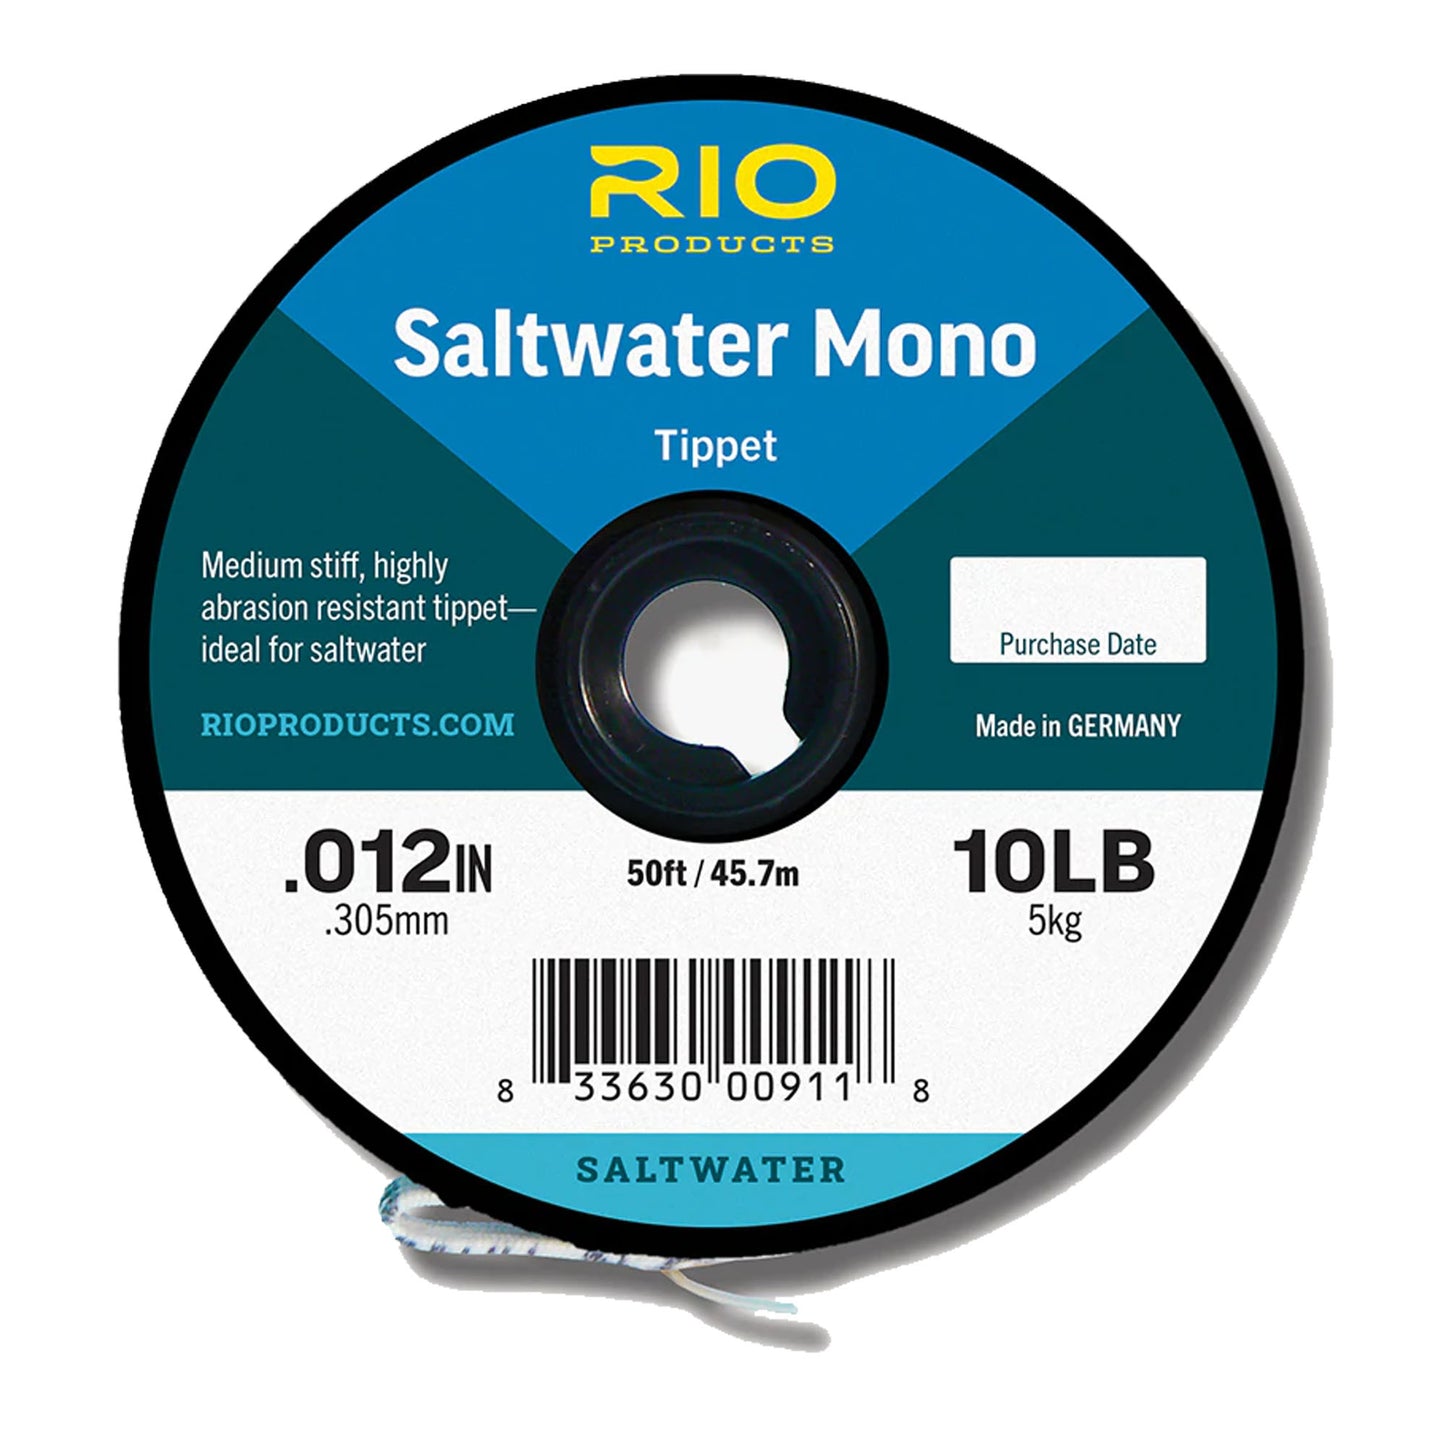 Saltwater Mono Tippet - 12LB